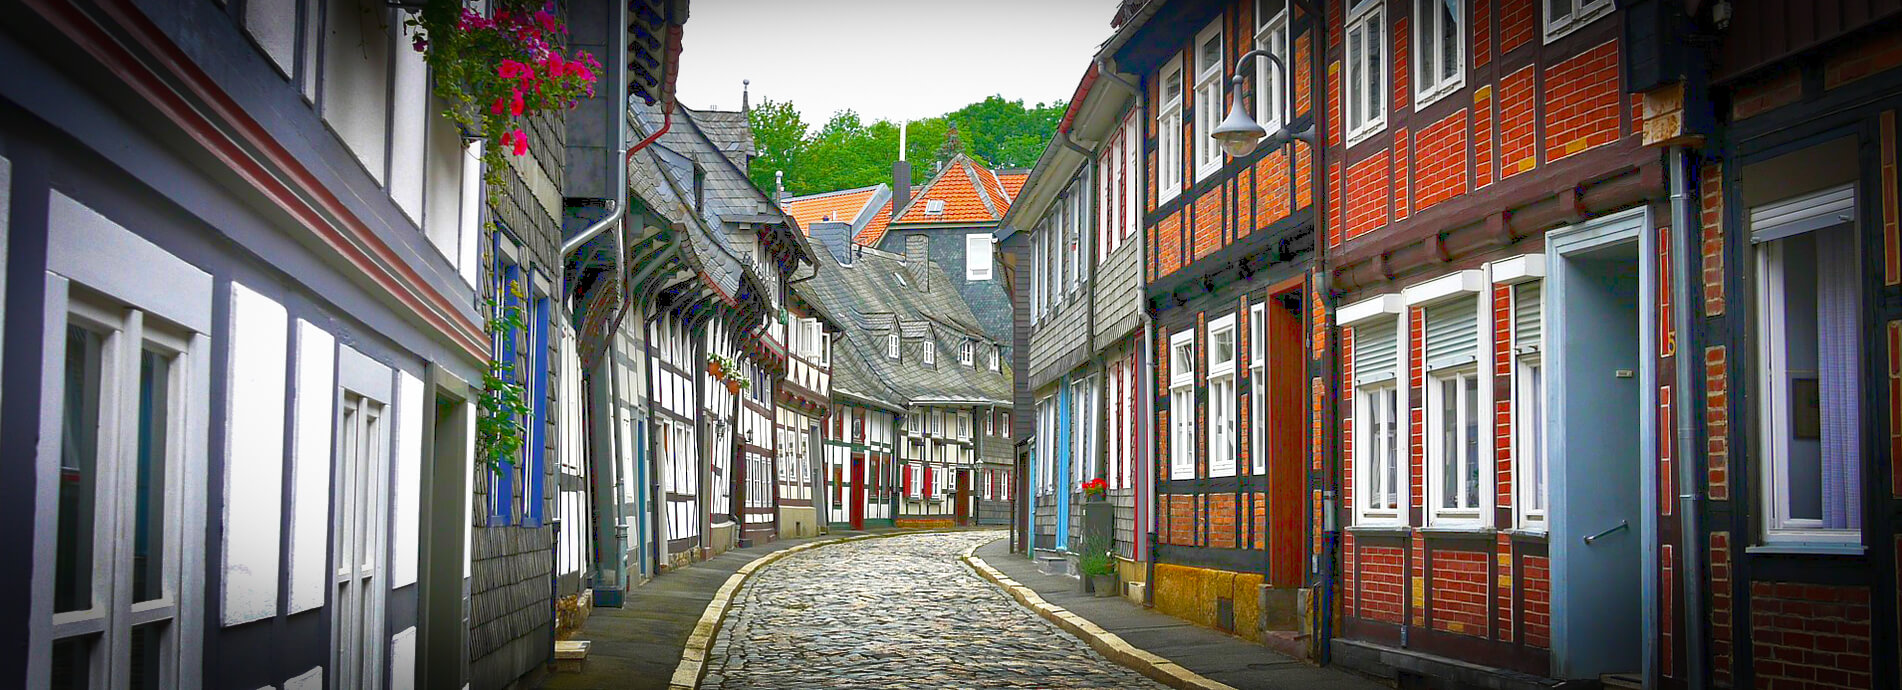 Kulturdenkmal Historische Altstadt Goslar